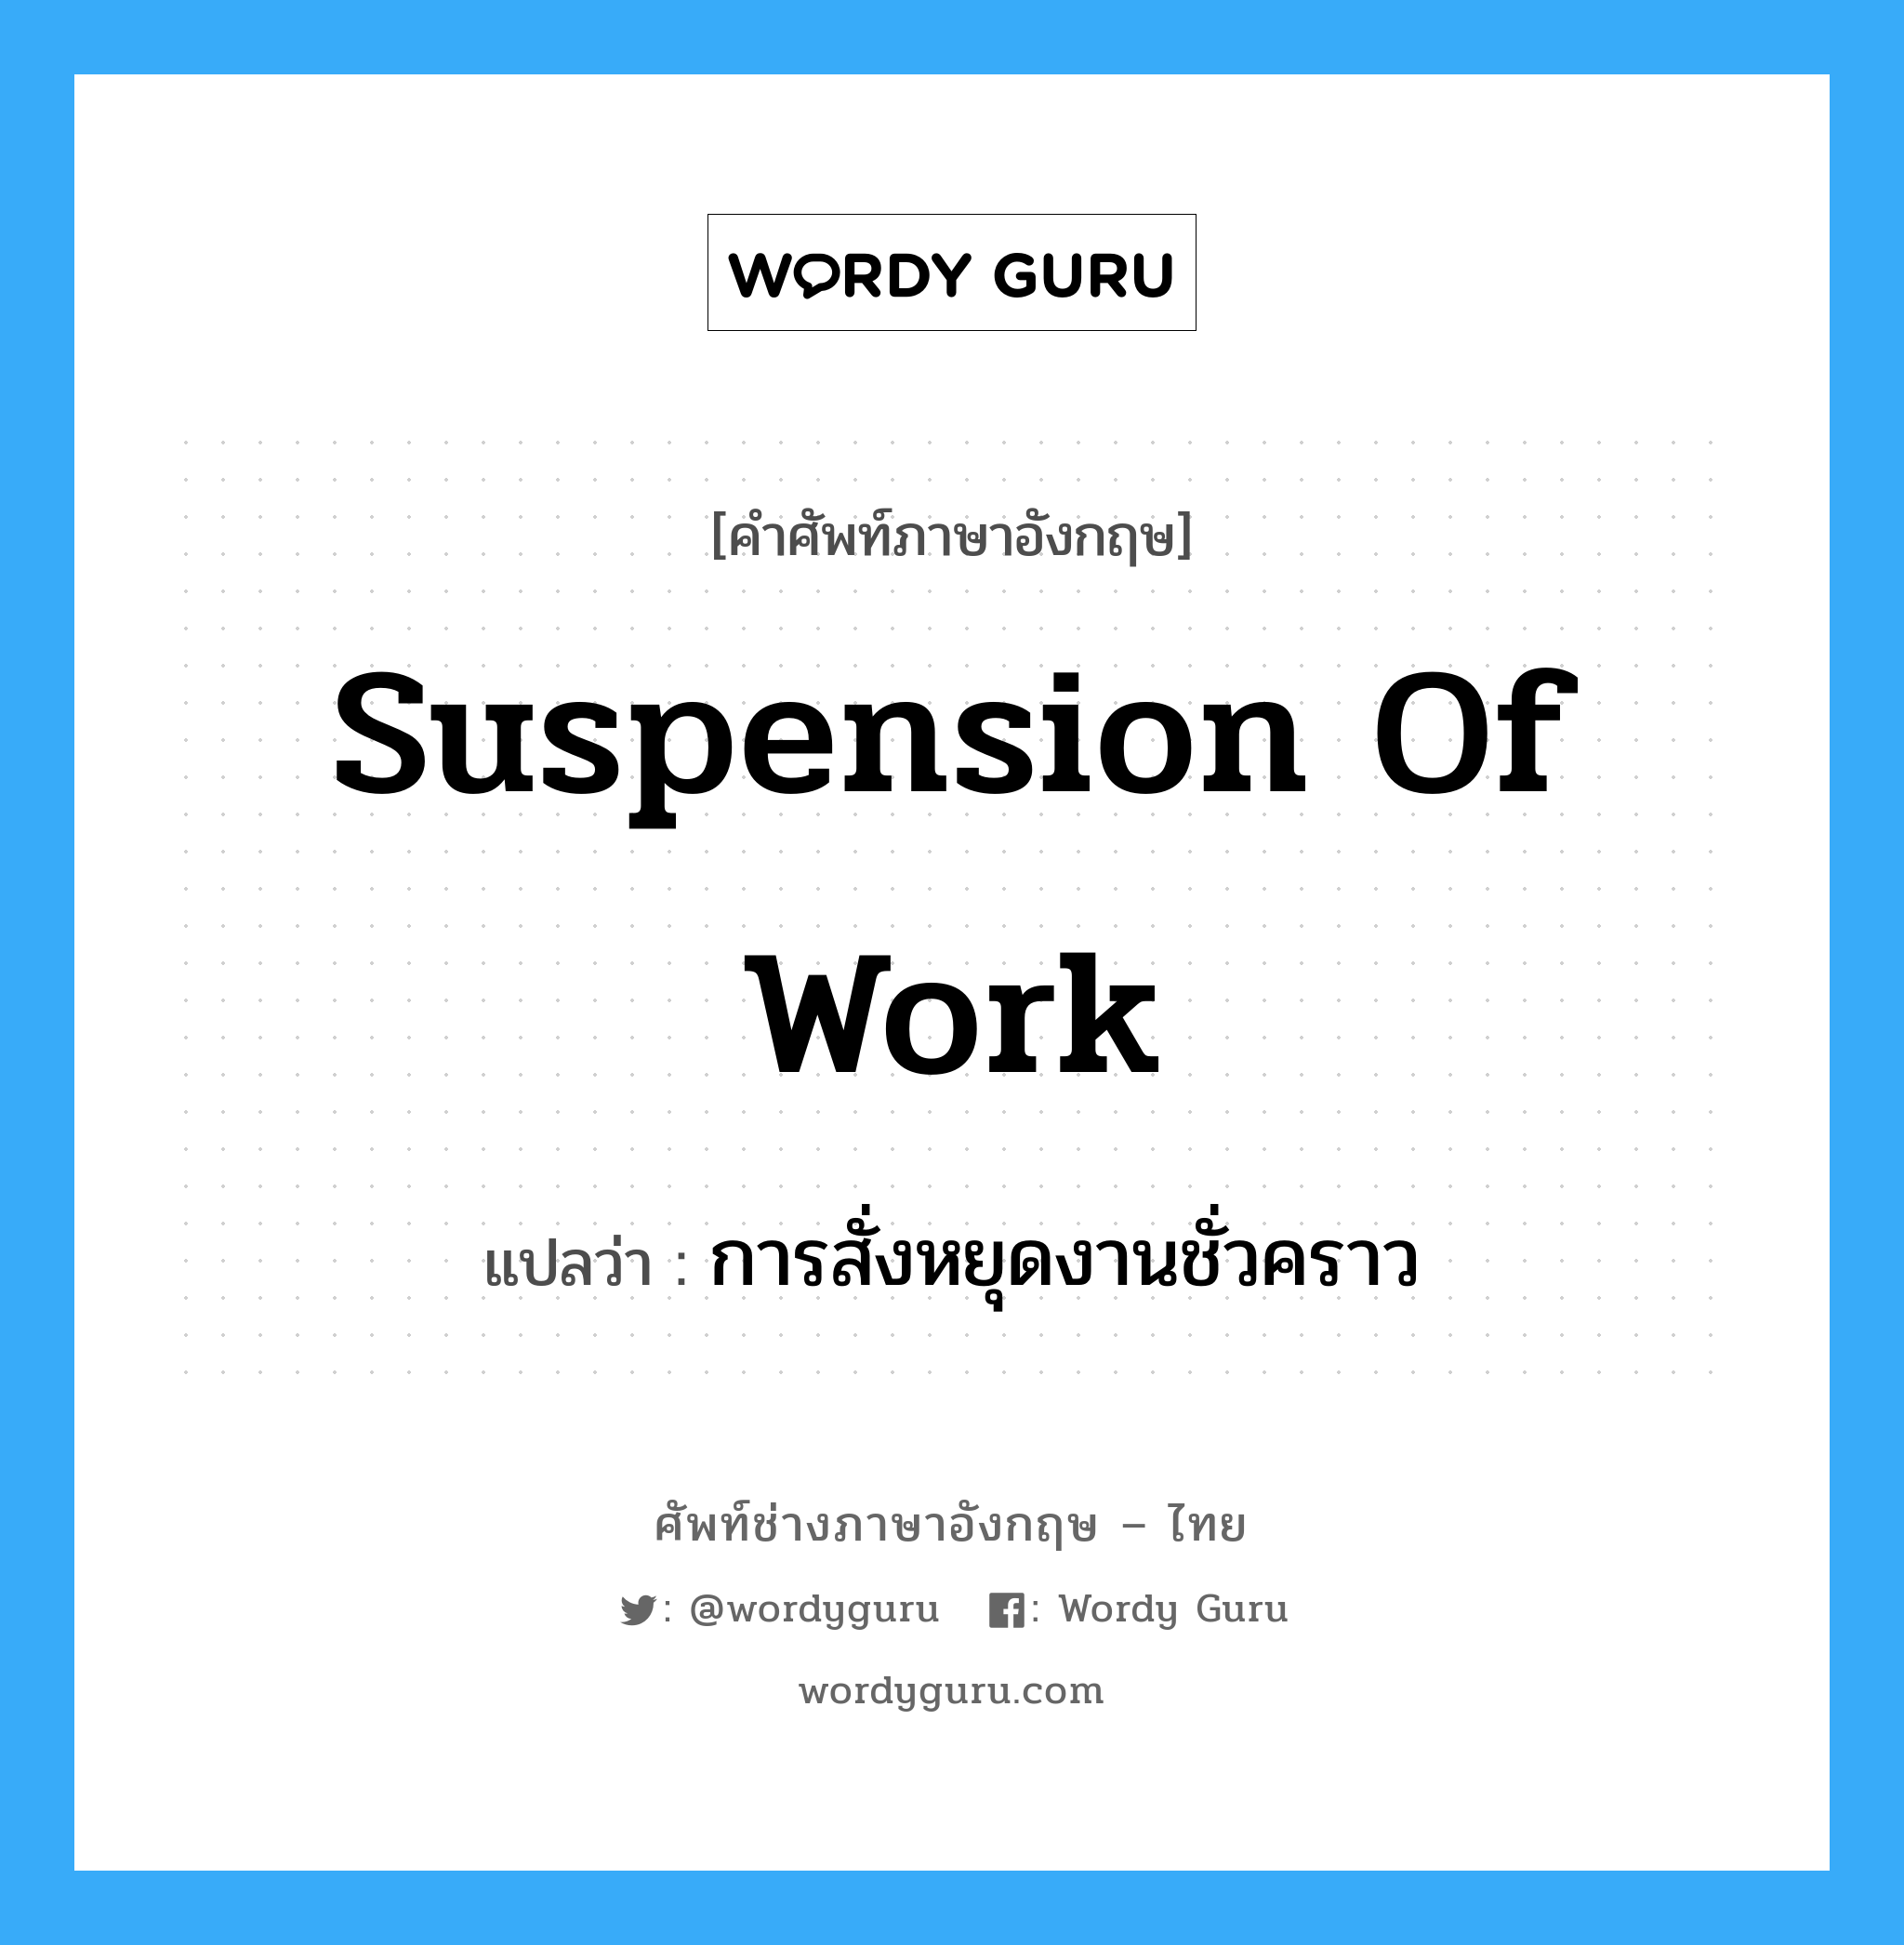 การสั่งหยุดงานชั่วคราว ภาษาอังกฤษ?, คำศัพท์ช่างภาษาอังกฤษ - ไทย การสั่งหยุดงานชั่วคราว คำศัพท์ภาษาอังกฤษ การสั่งหยุดงานชั่วคราว แปลว่า Suspension of Work